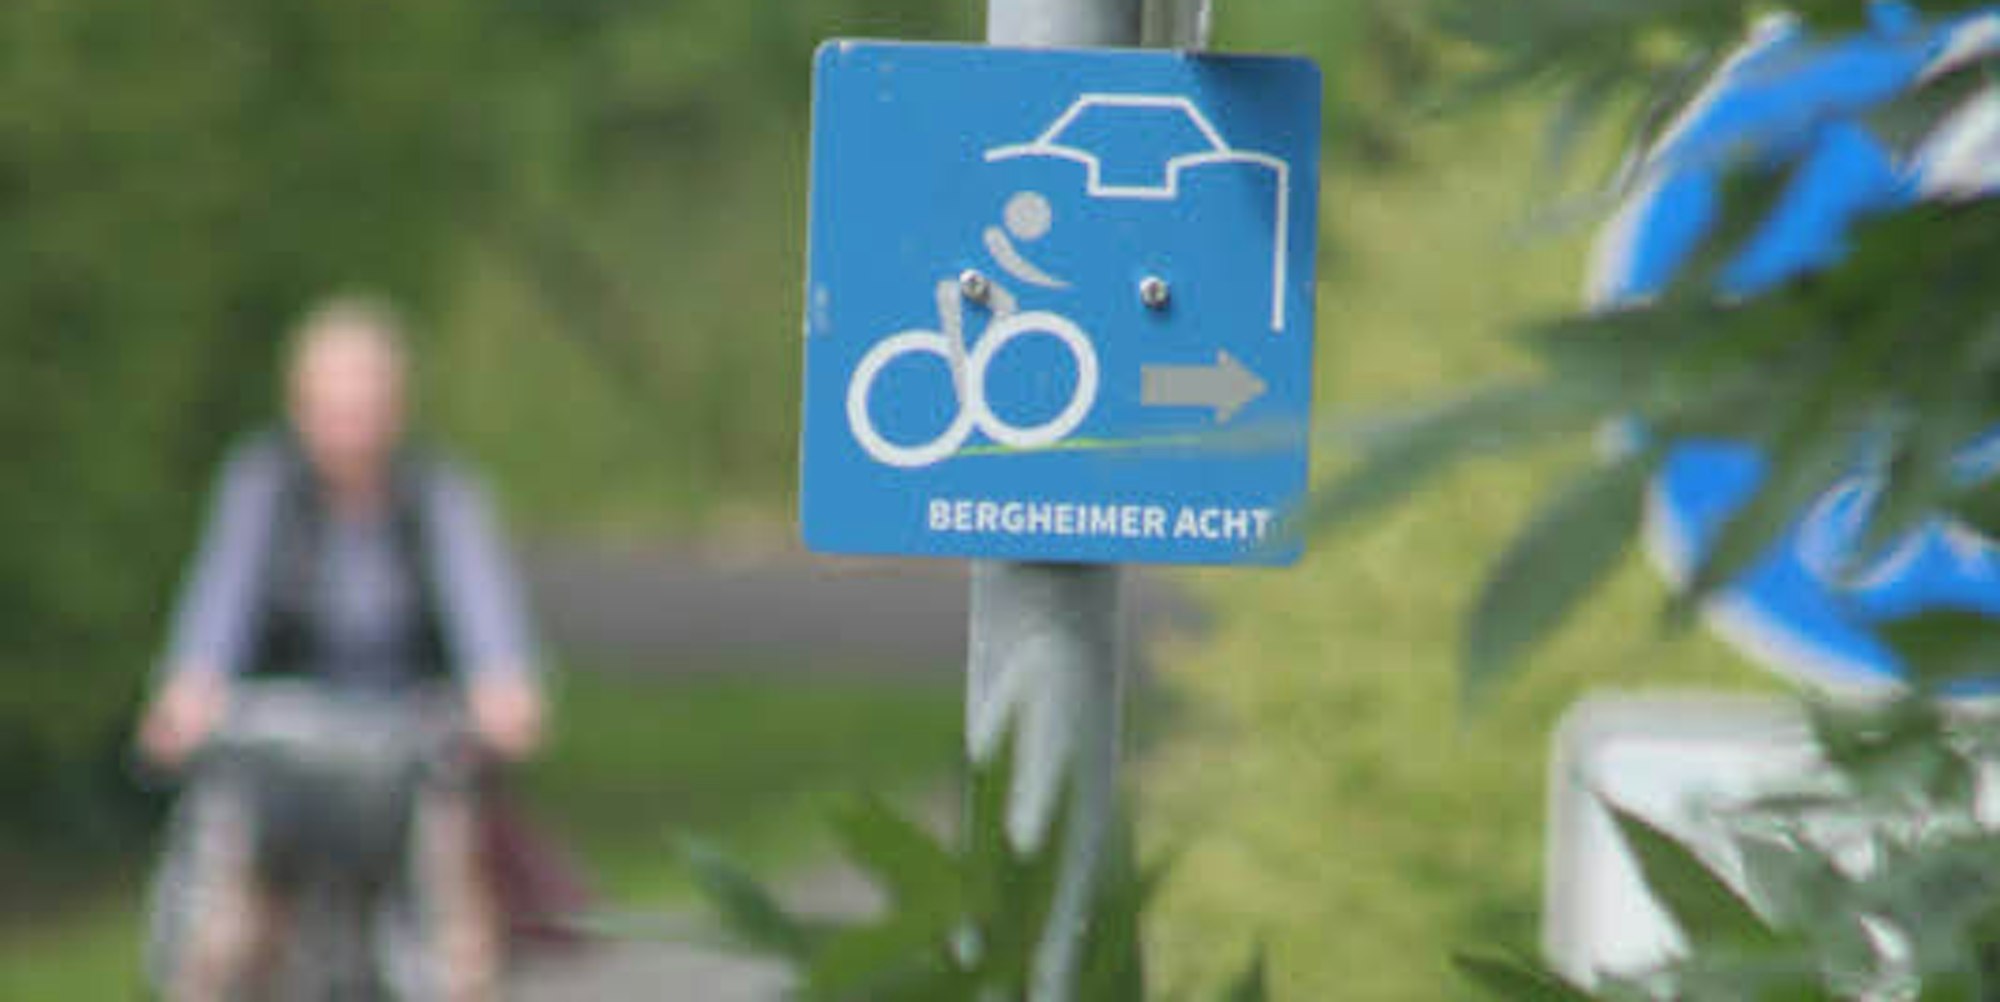 Neue Schilder, geänderte Strecke: Die Bergheimer Acht hat eine gründliche Auffrischung erhalten.